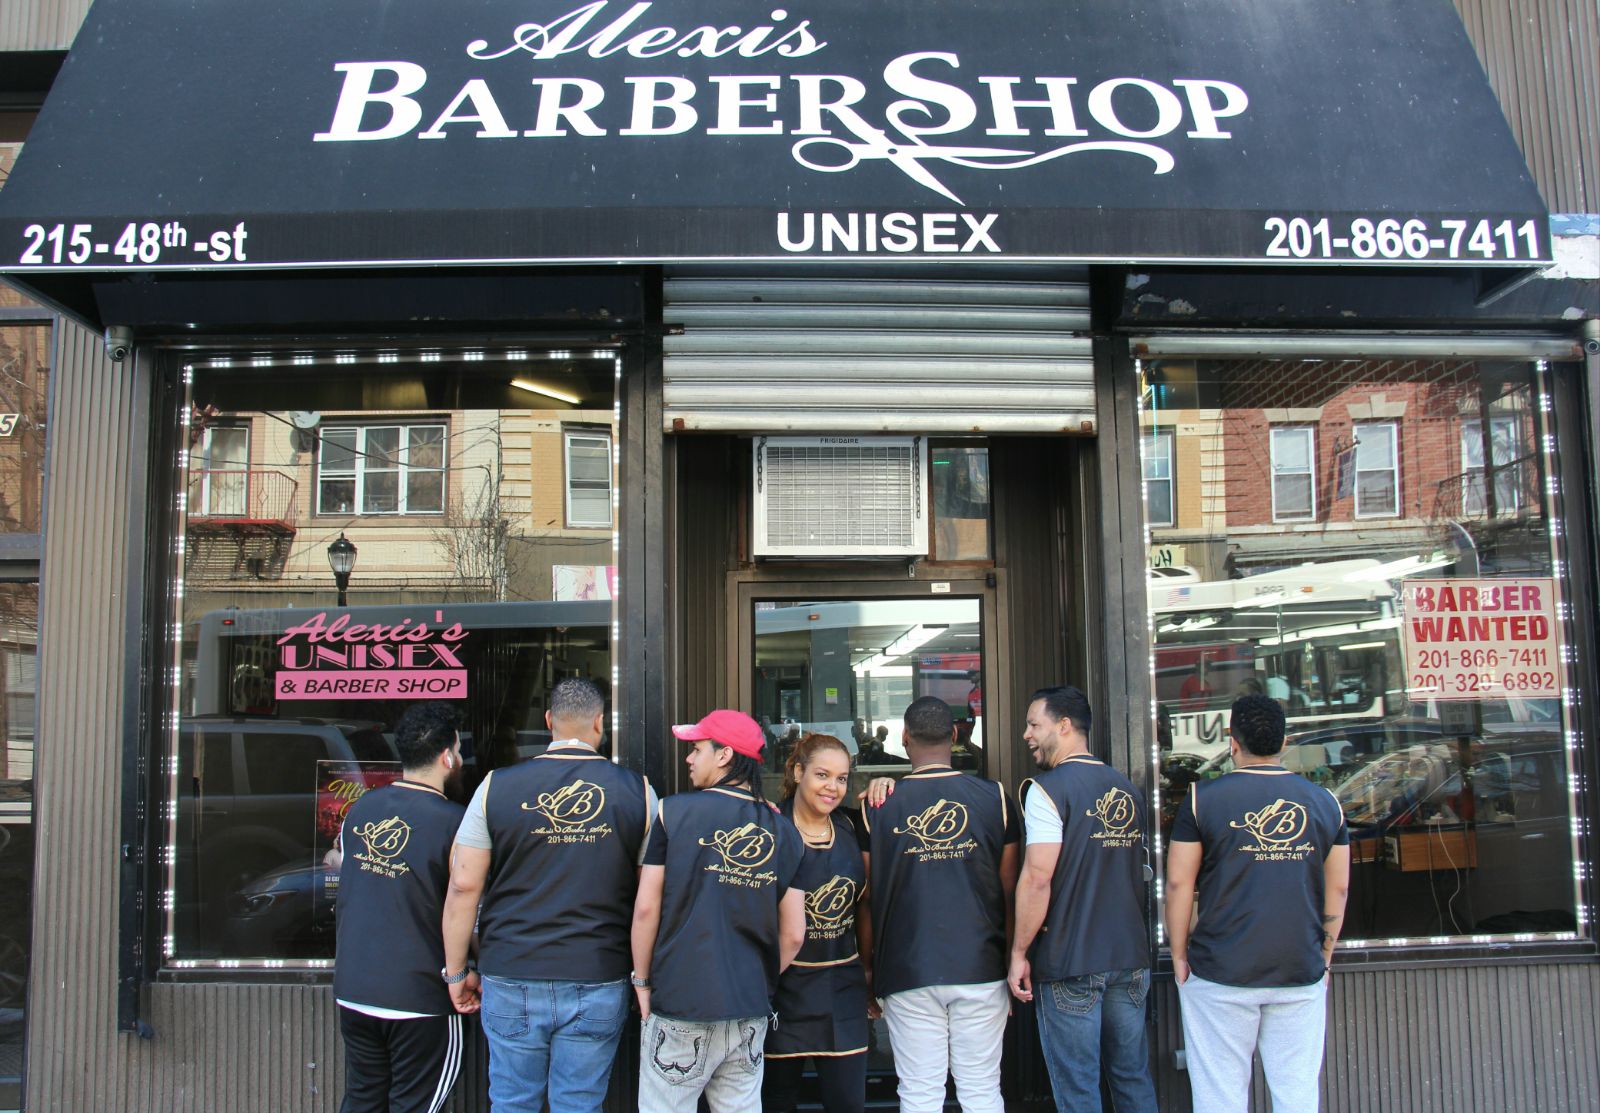 Alexis Unisex & Barber Shop